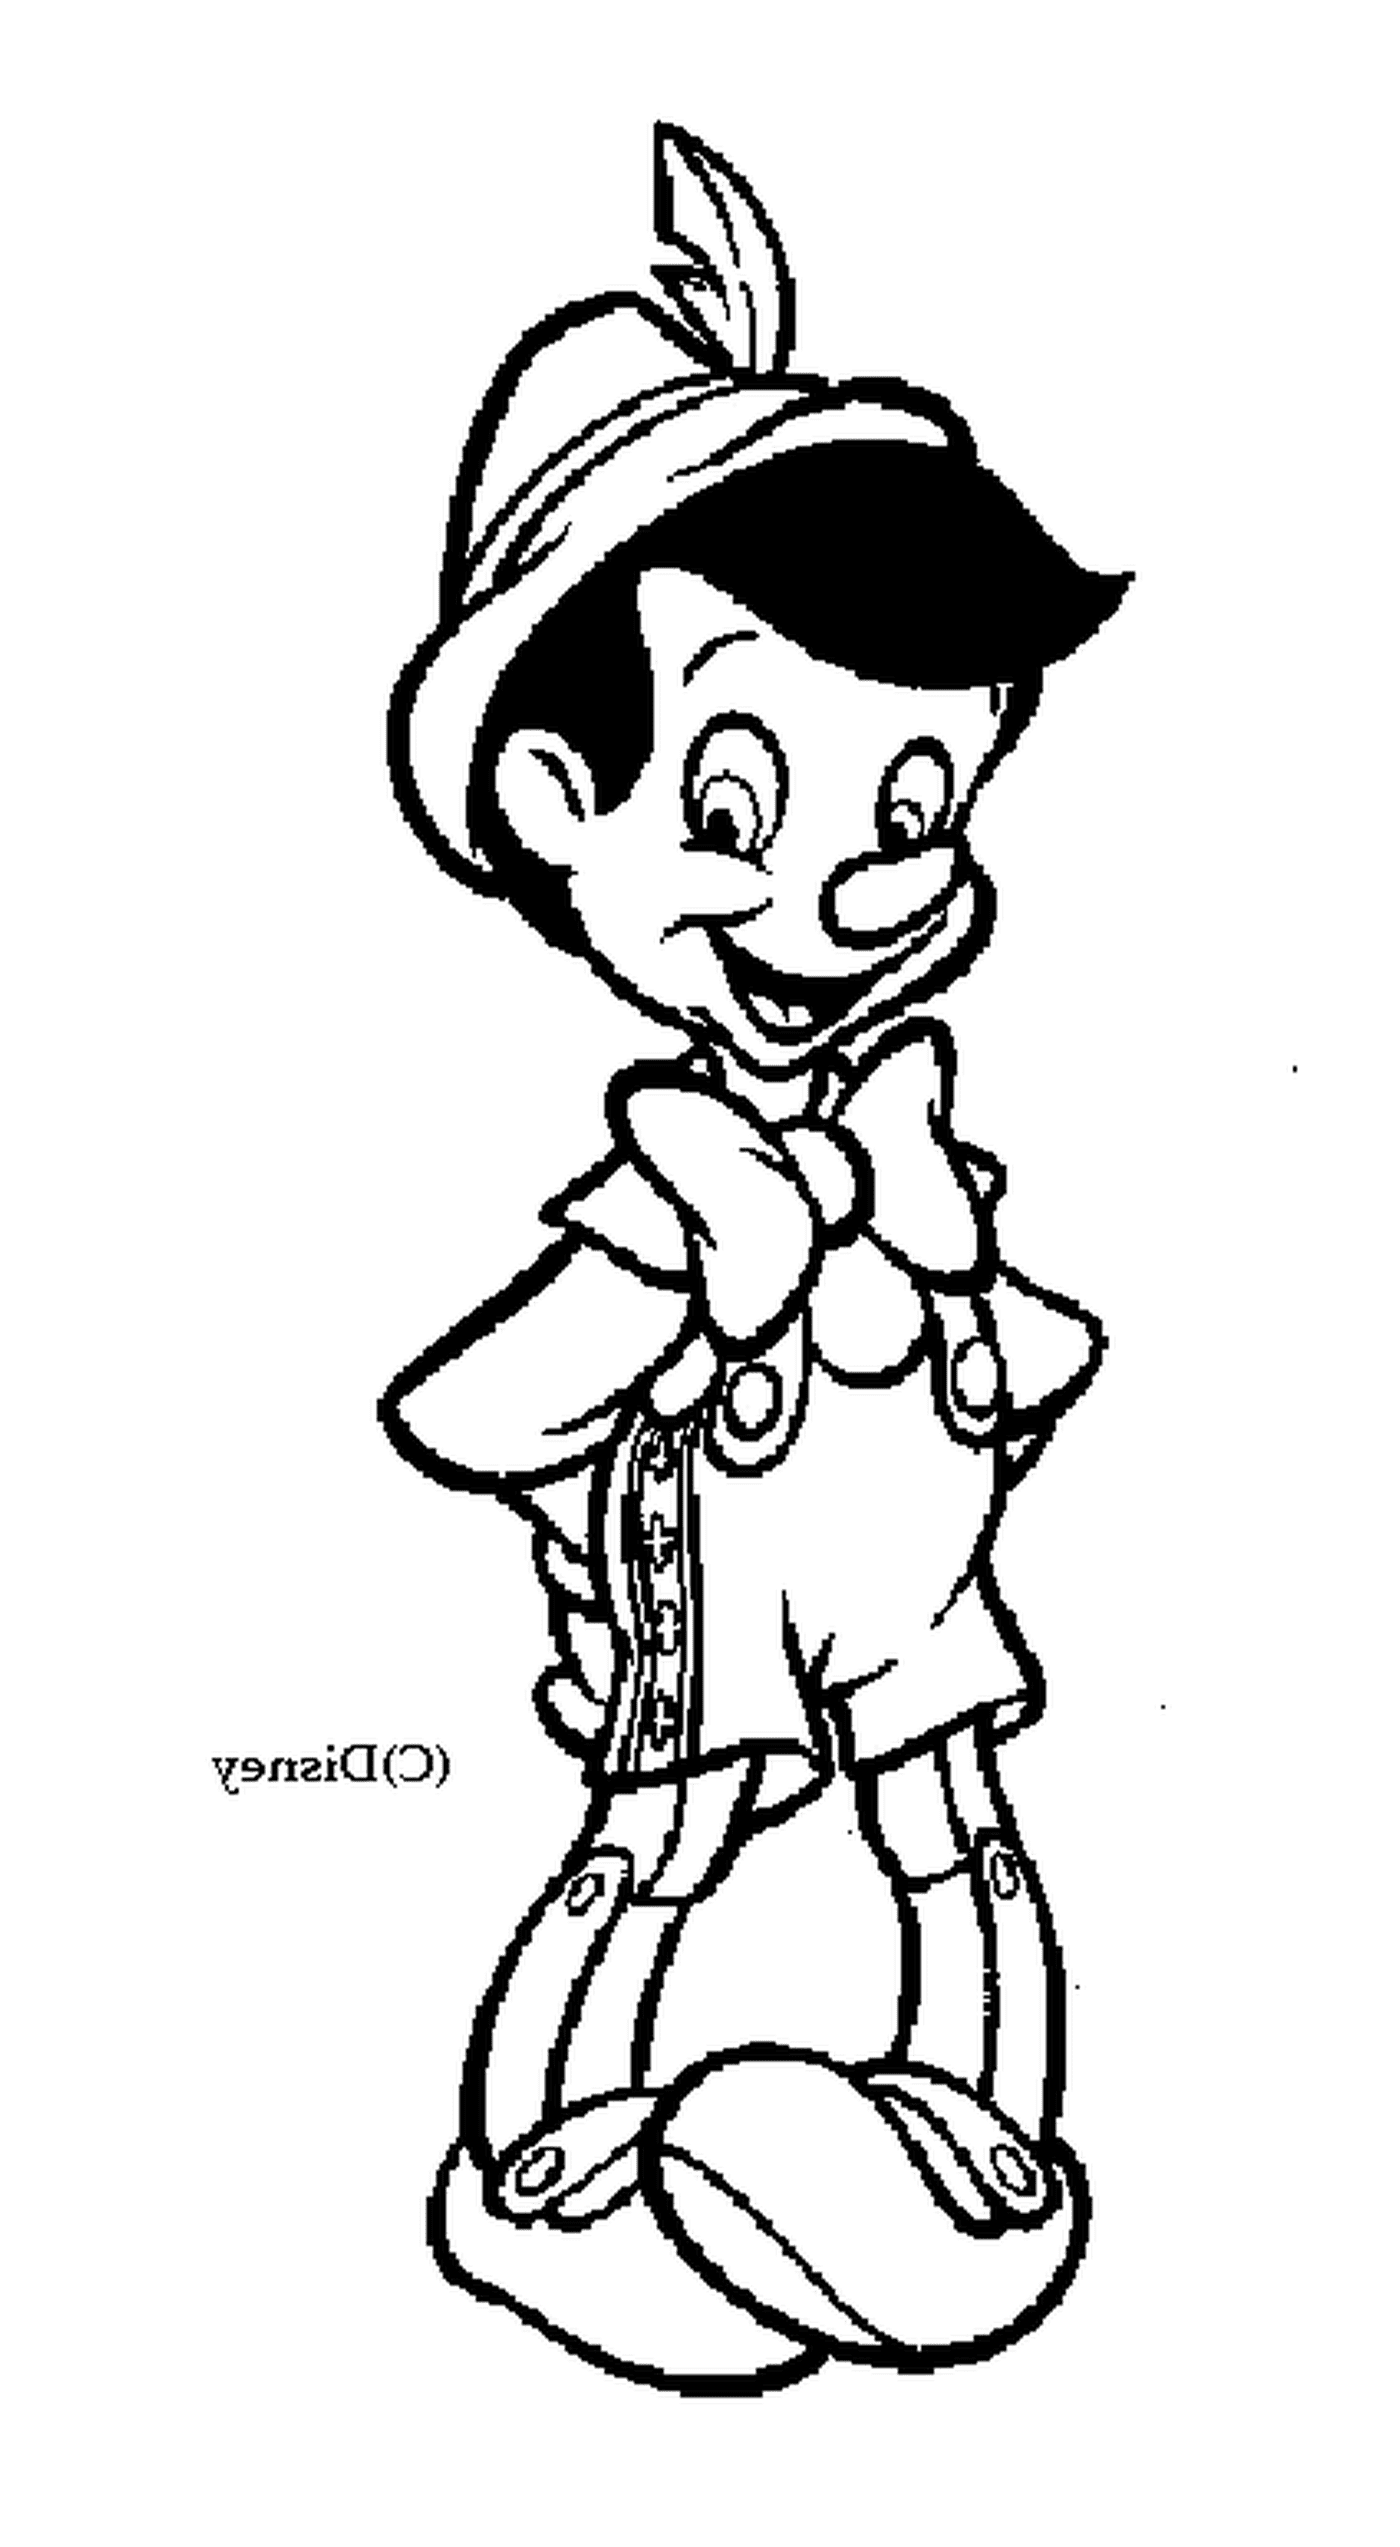  Pinocchio, il personaggio Disney amato 